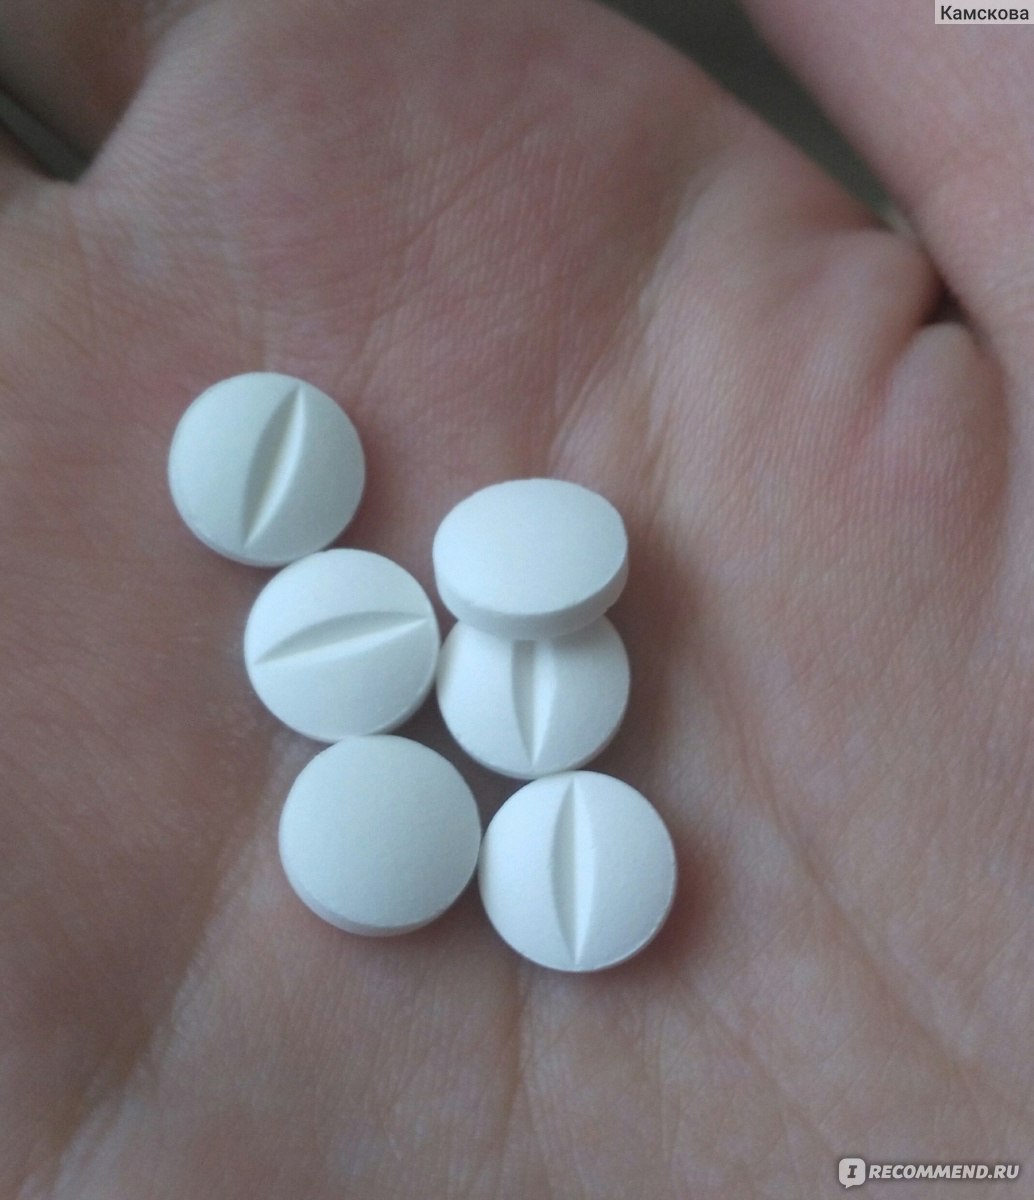 Пропицил выпускается в виде округлых выпуклых таблеток белого цвета с разделительной полосой с одной стороны.